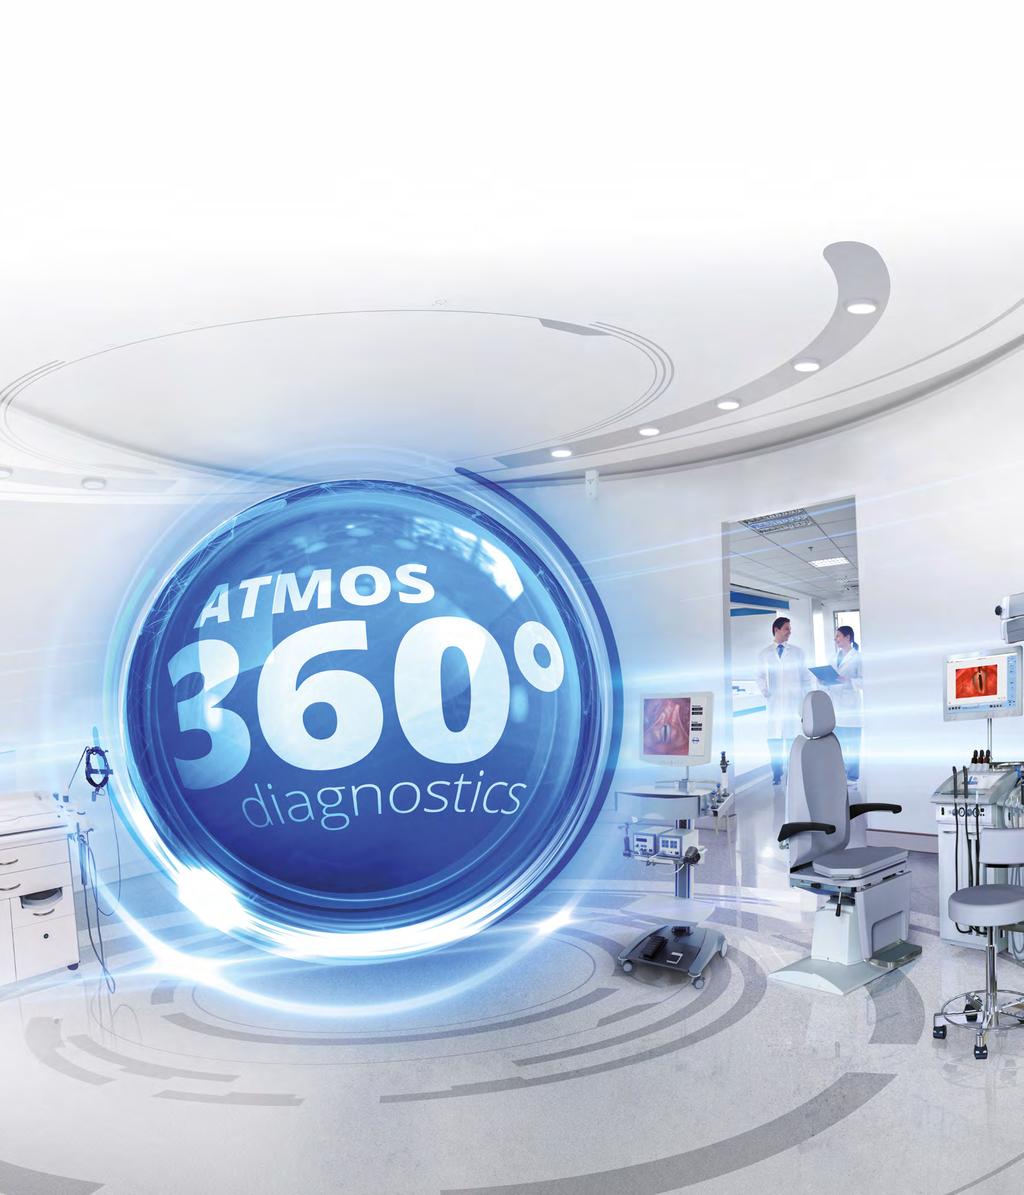 ATMOS 360 diagnostics